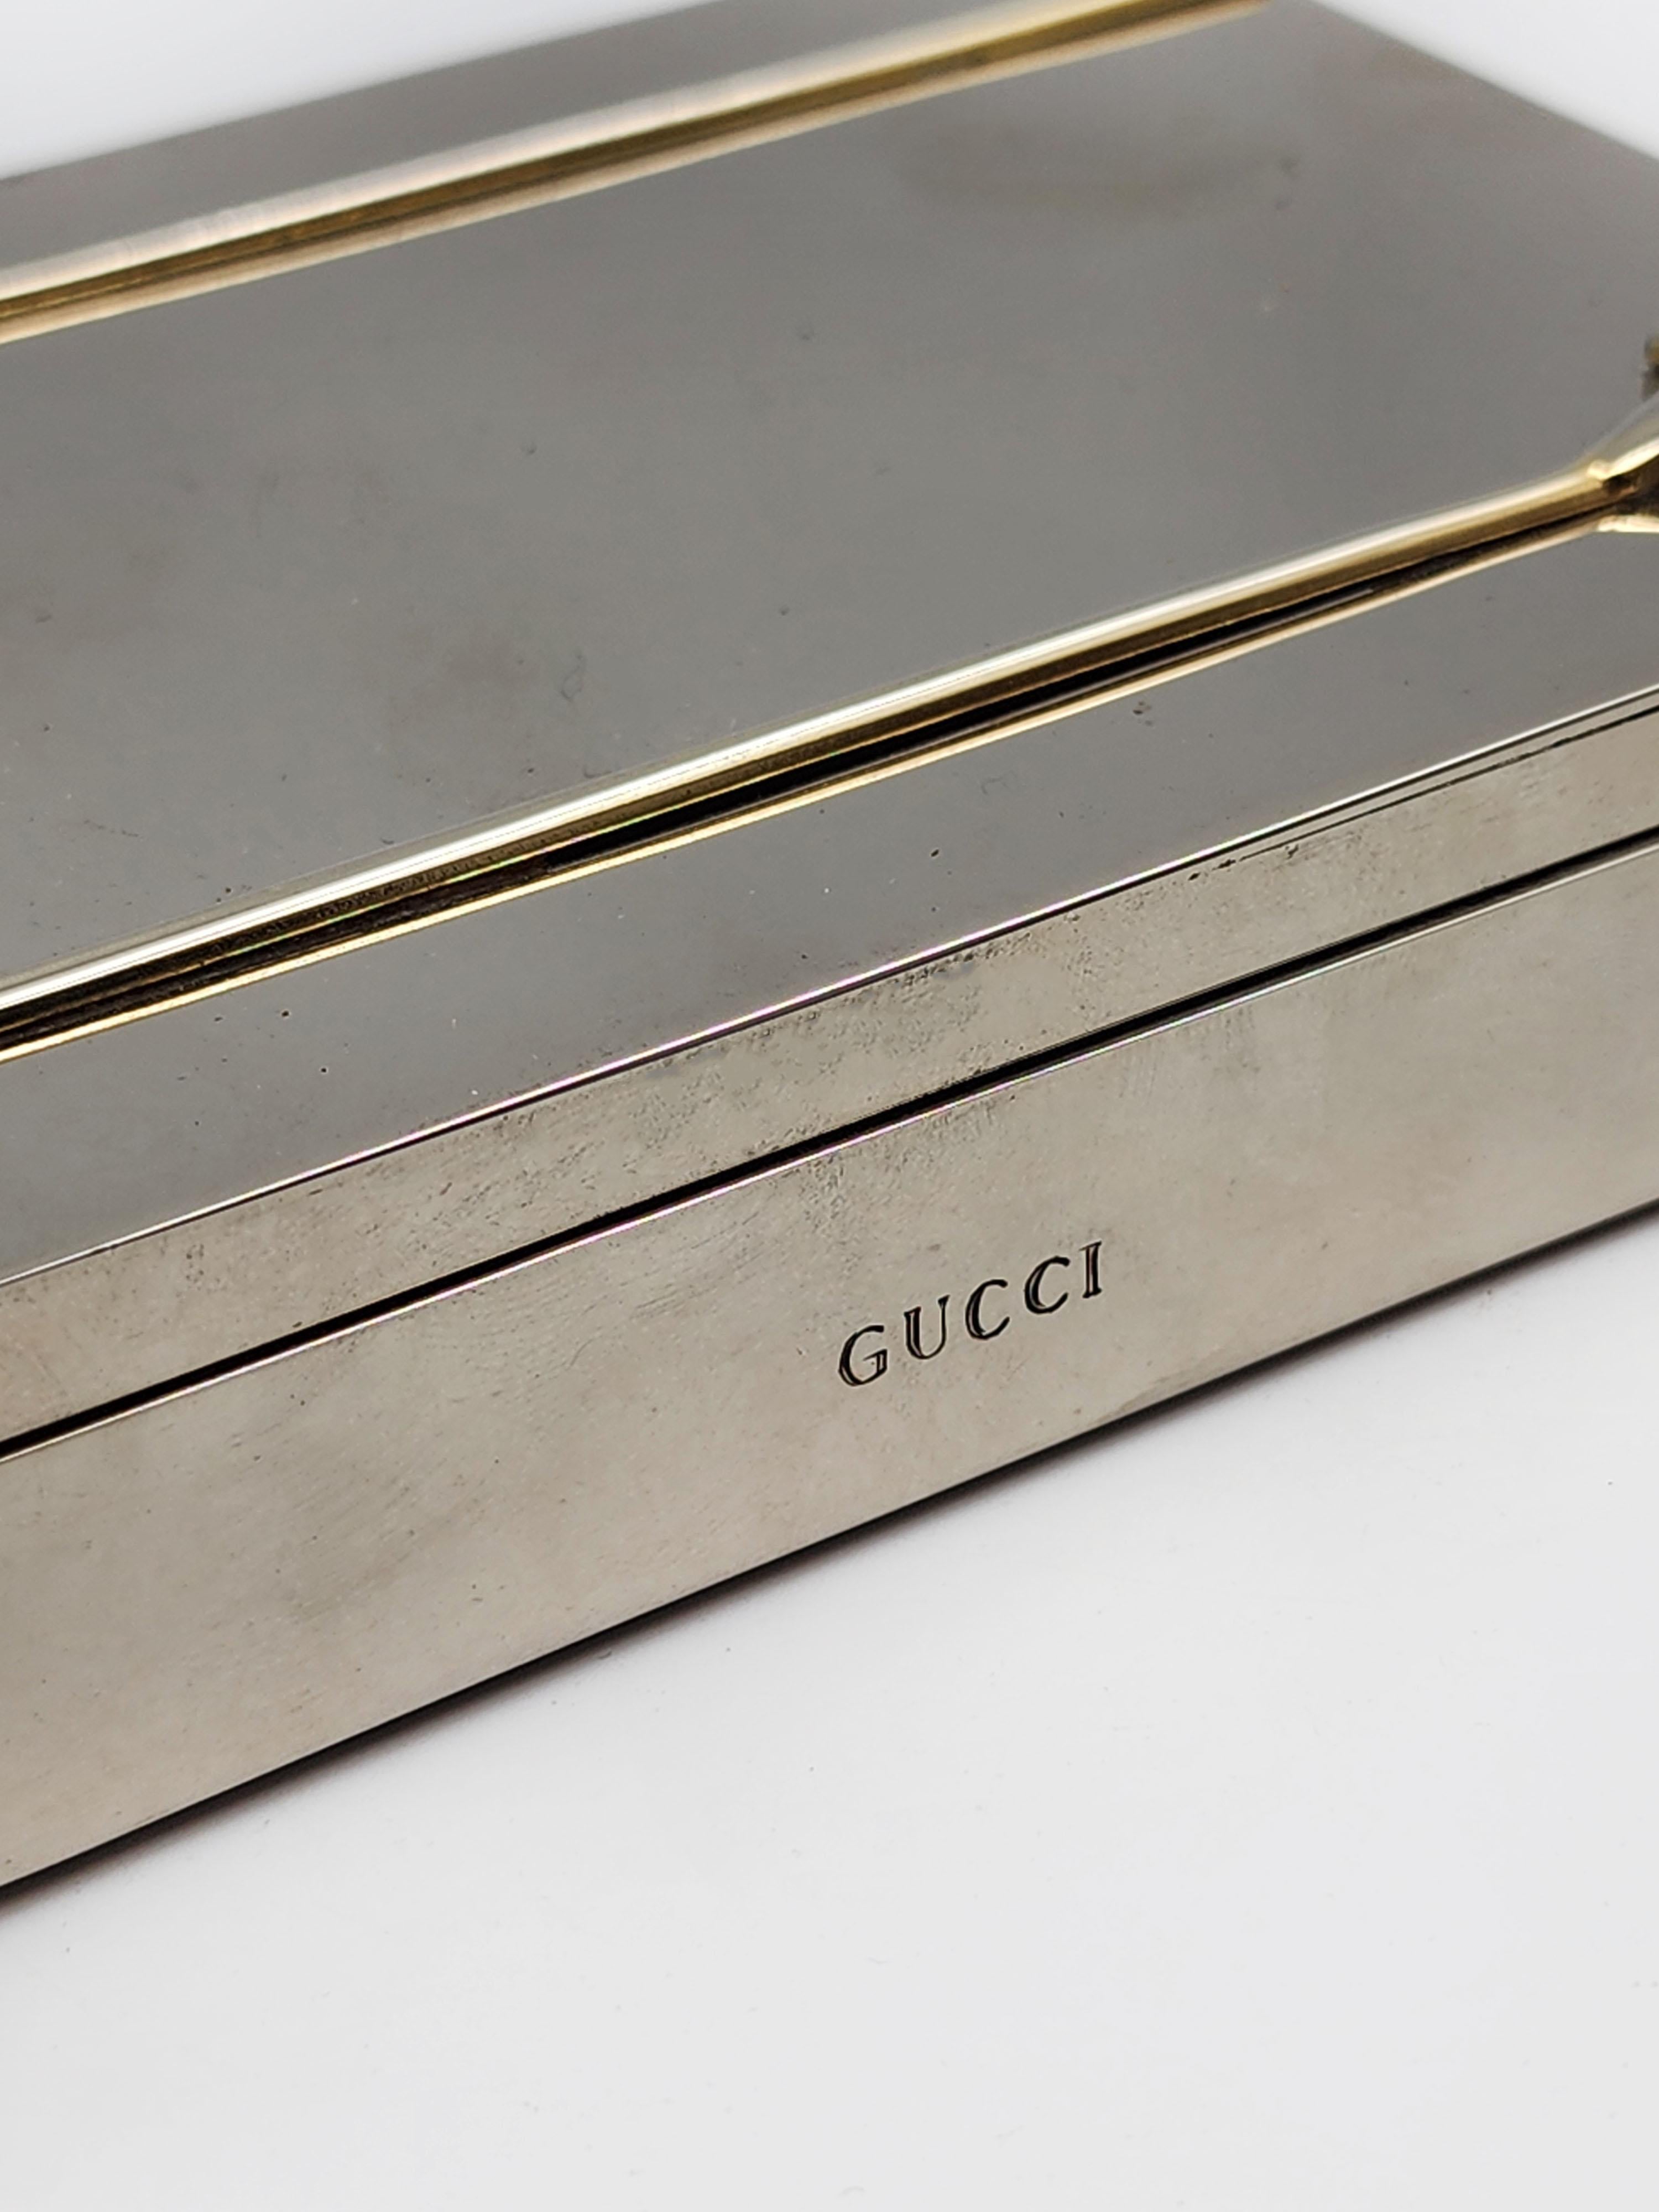 Italian Gucci Art Deco Silver Metal Tobacco Case For Sale